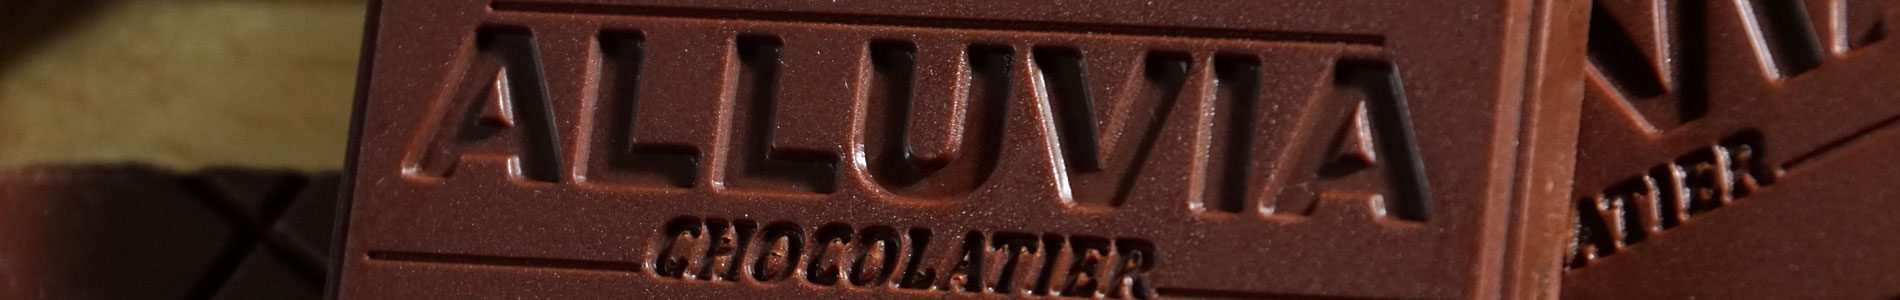 Quy trình chế tạo nên những viên socola thủ công nguyên chất đúng điệu tại Alluvia bao gồm nhiều công đoạn khác nhau